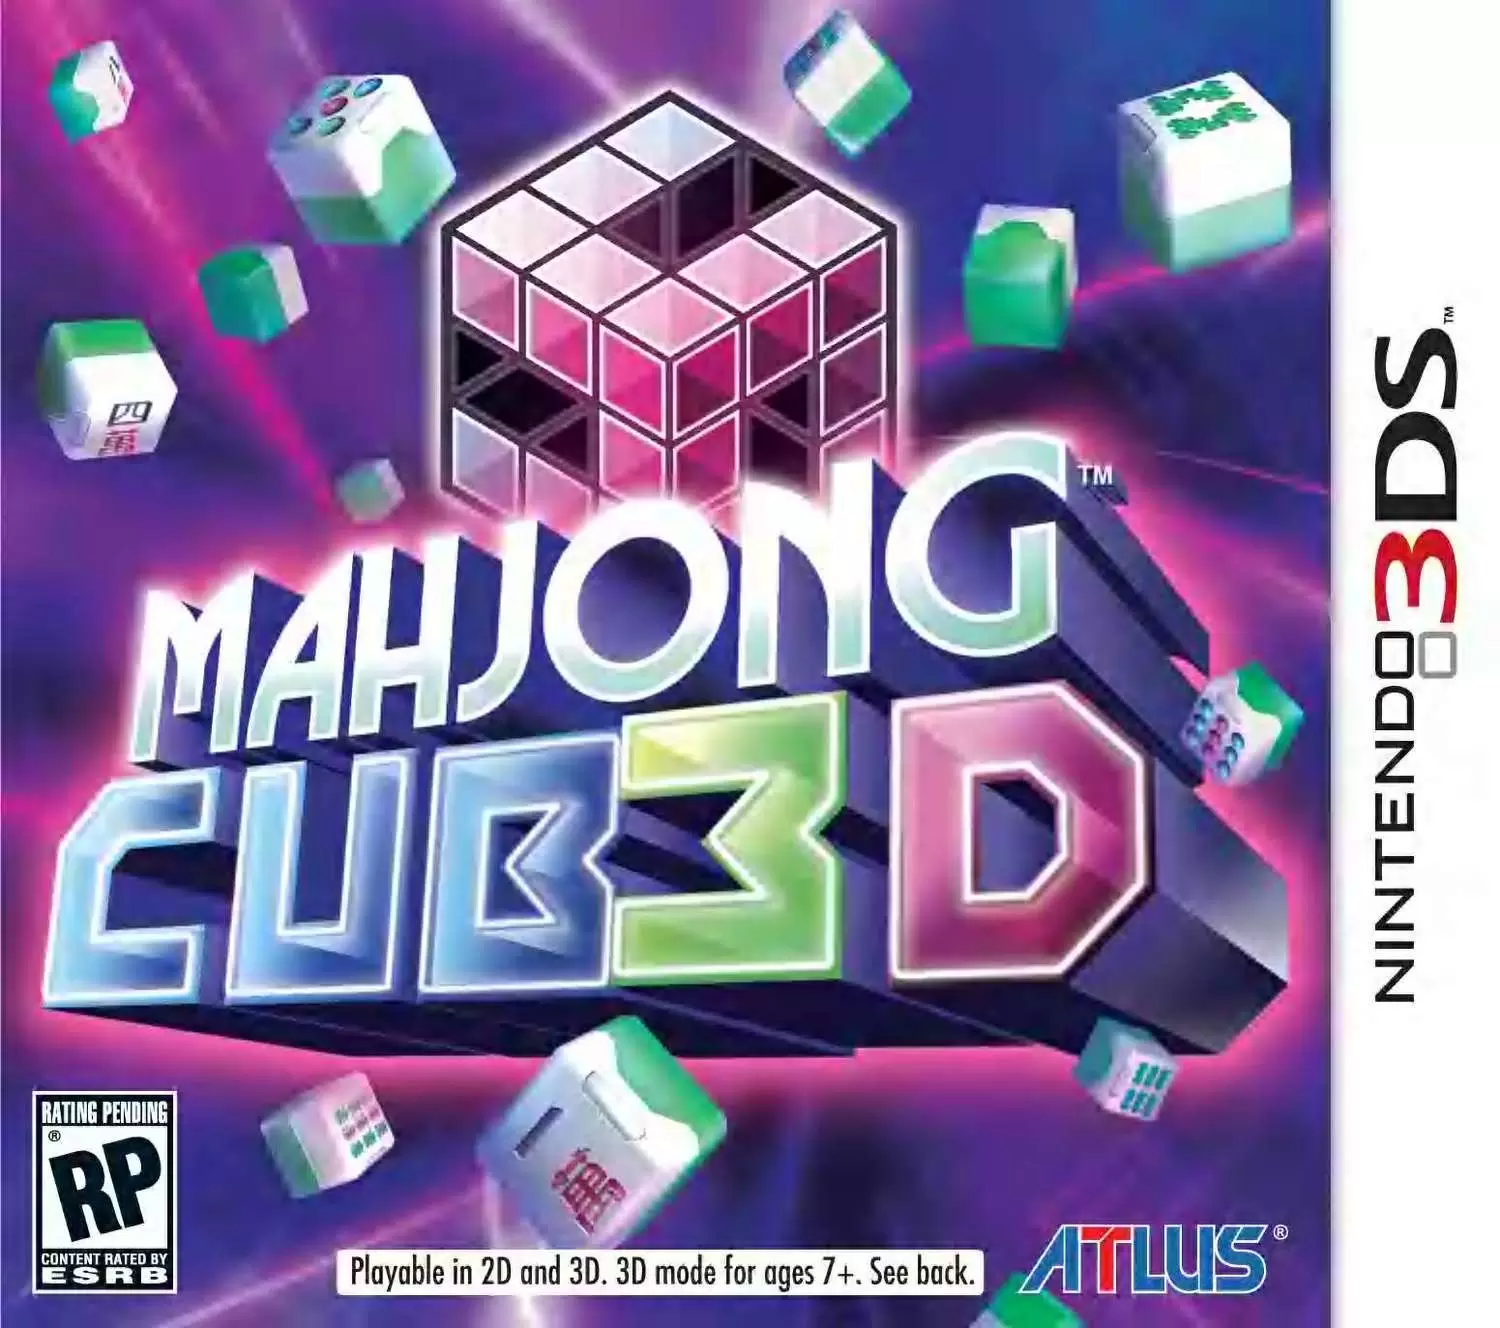 Jeux Nintendo 2DS / 3DS - Mahjong Cub3D